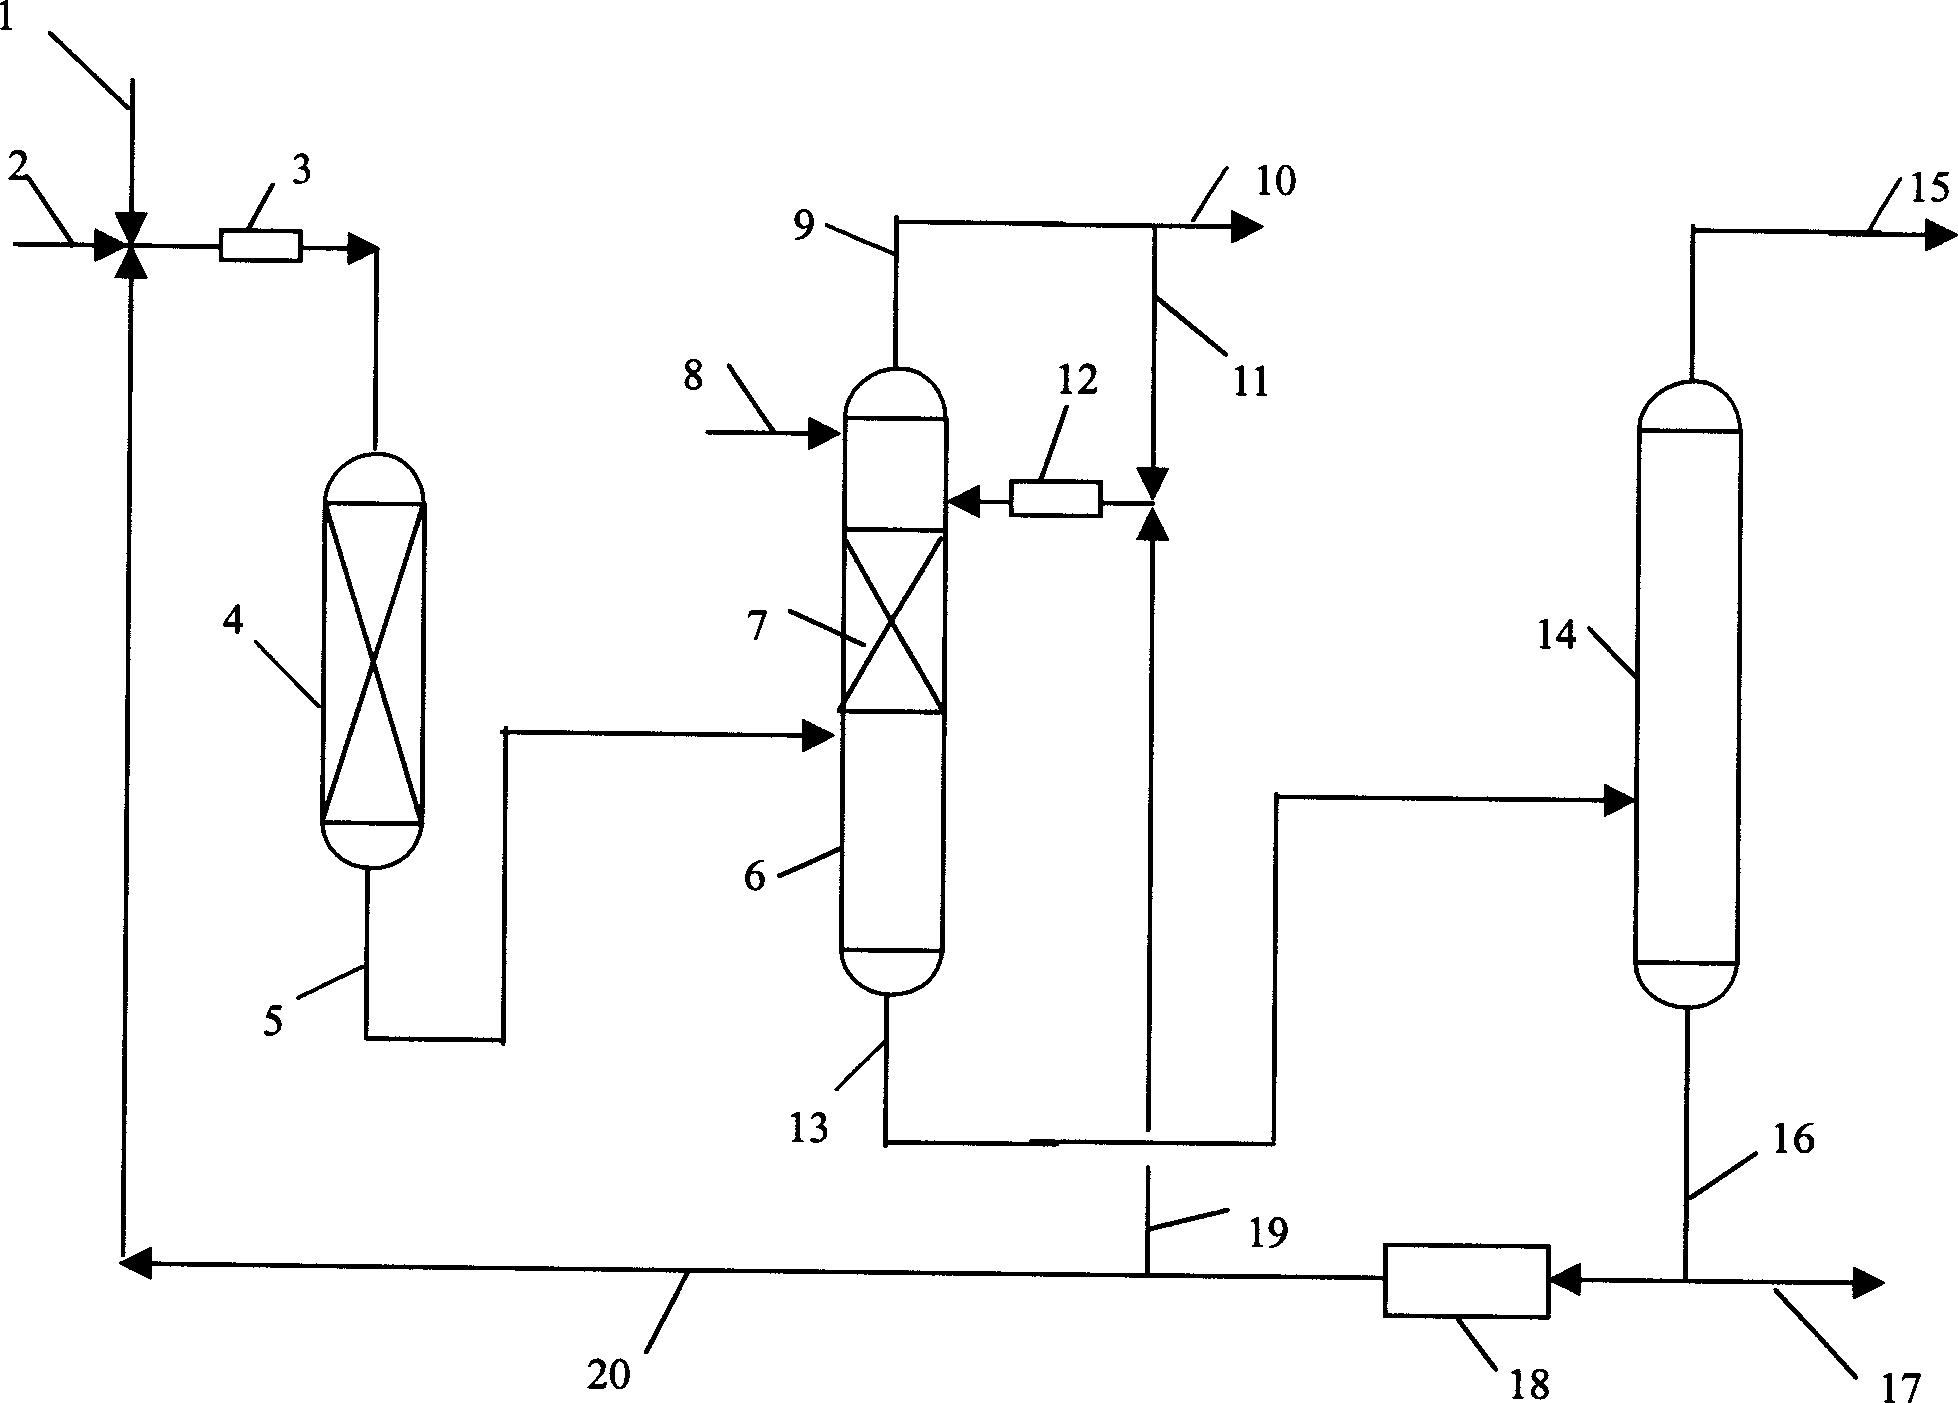 Process for preparing tertiary butanol